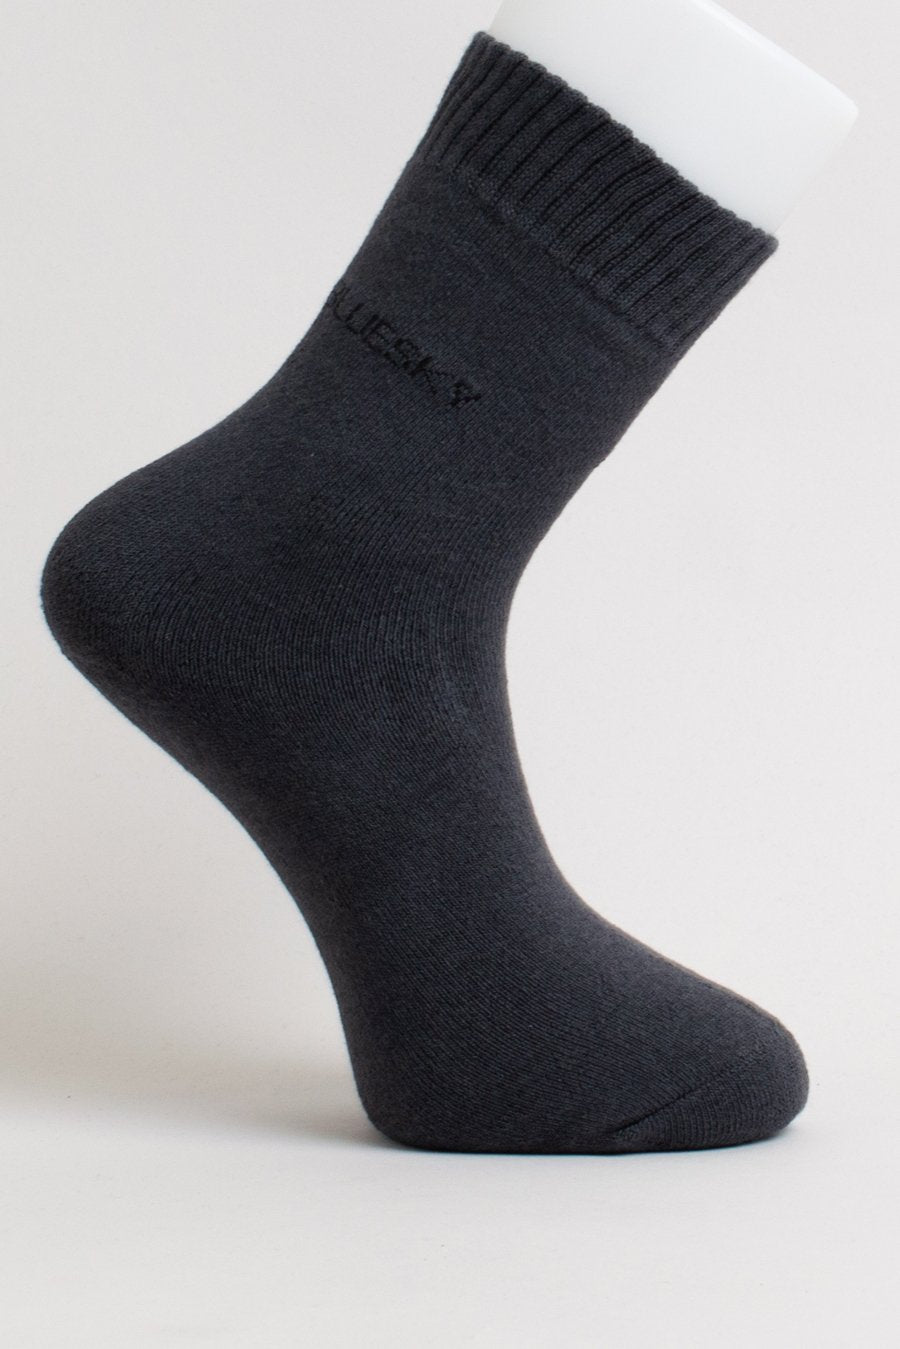 Blue Sky - Men's Activewear Bamboo Socks Antibacterial Footwear All Things Being Eco